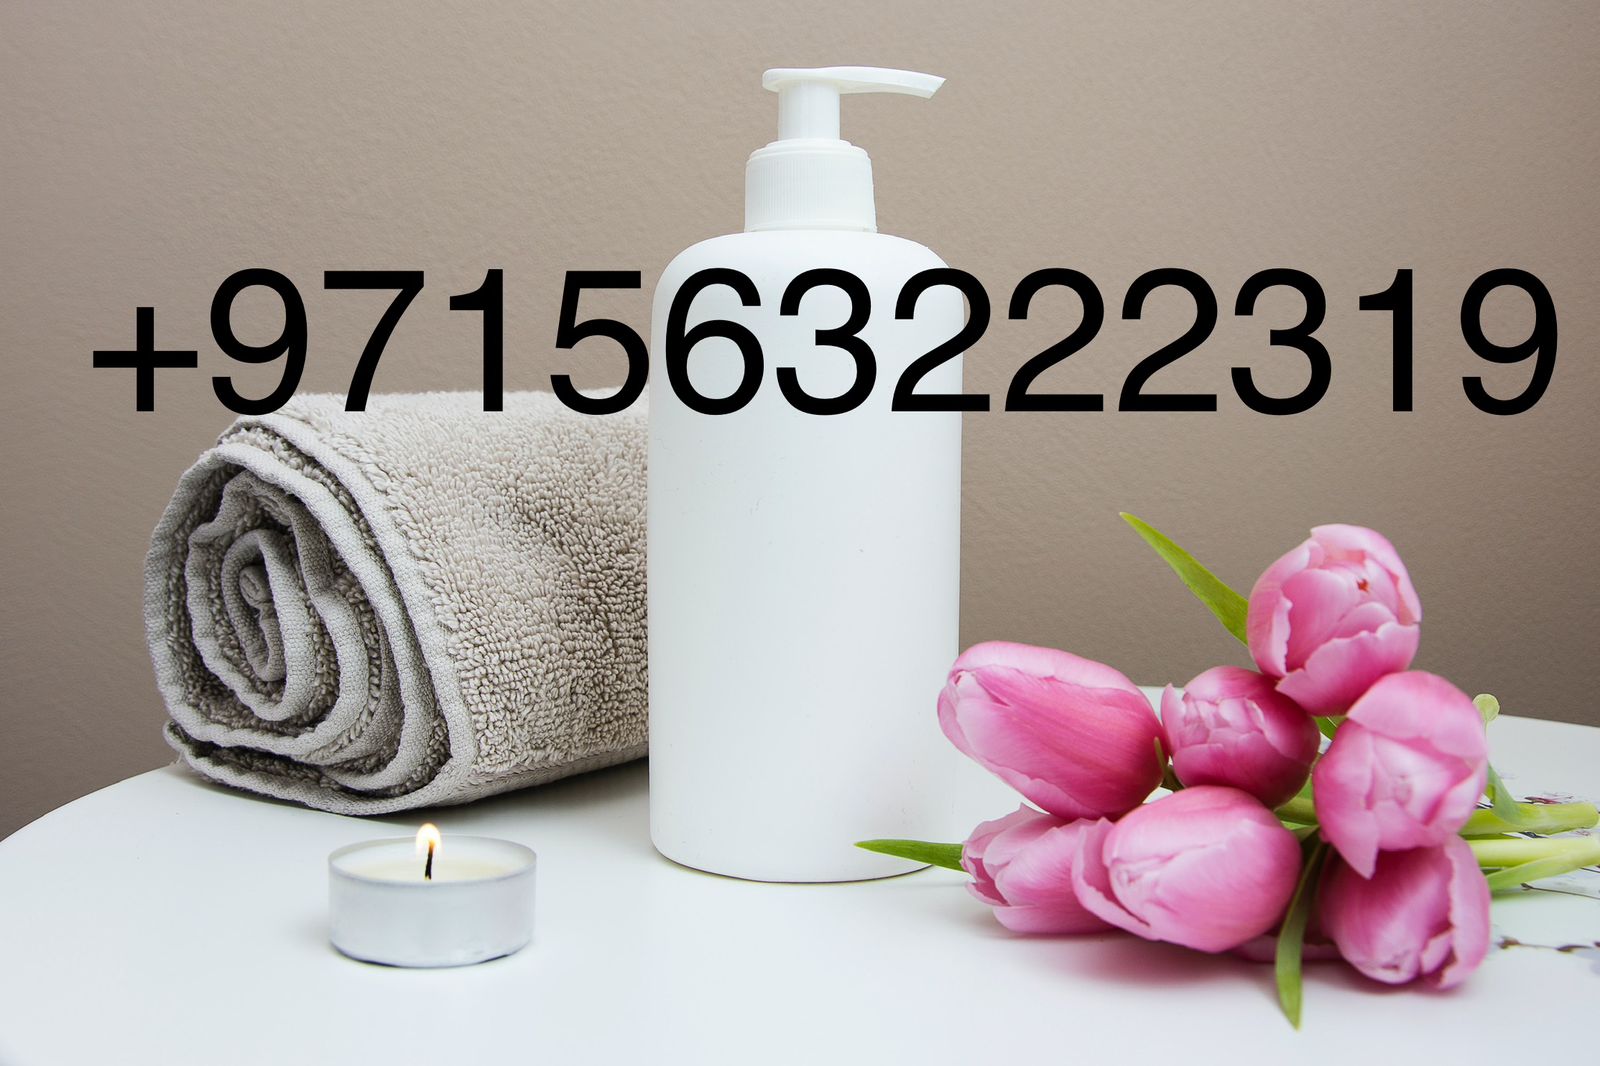 Massage Centre For Rent In 4 Star Hotel Dubai Call 0563222319